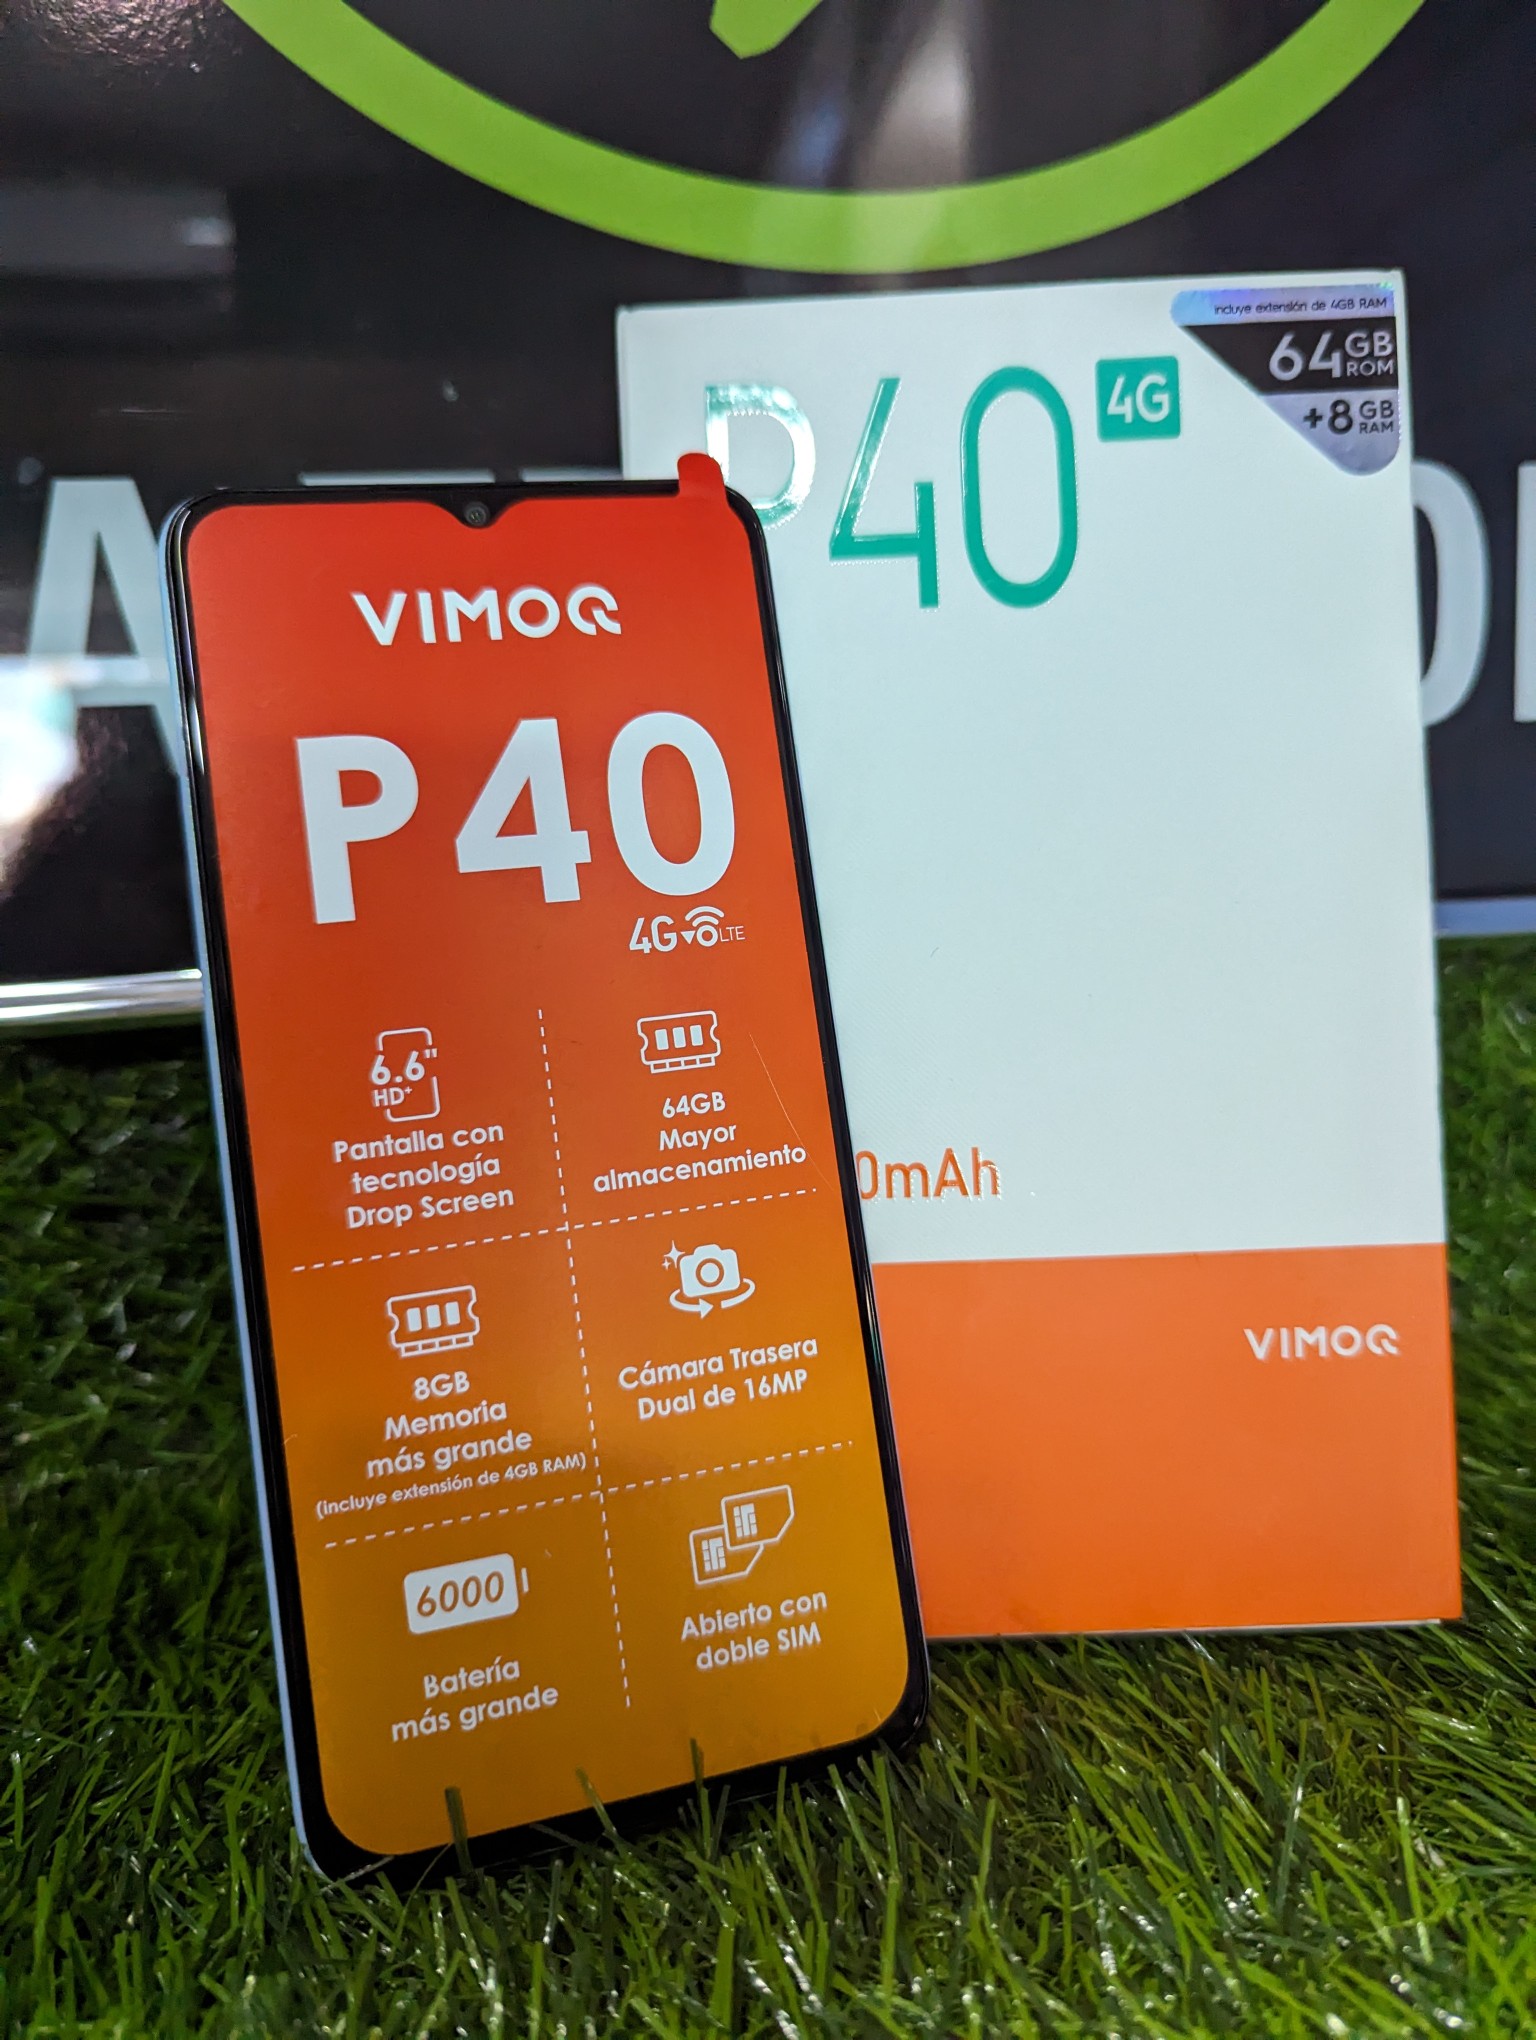 celulares y tabletas - Celulares nuevos vimoq 0